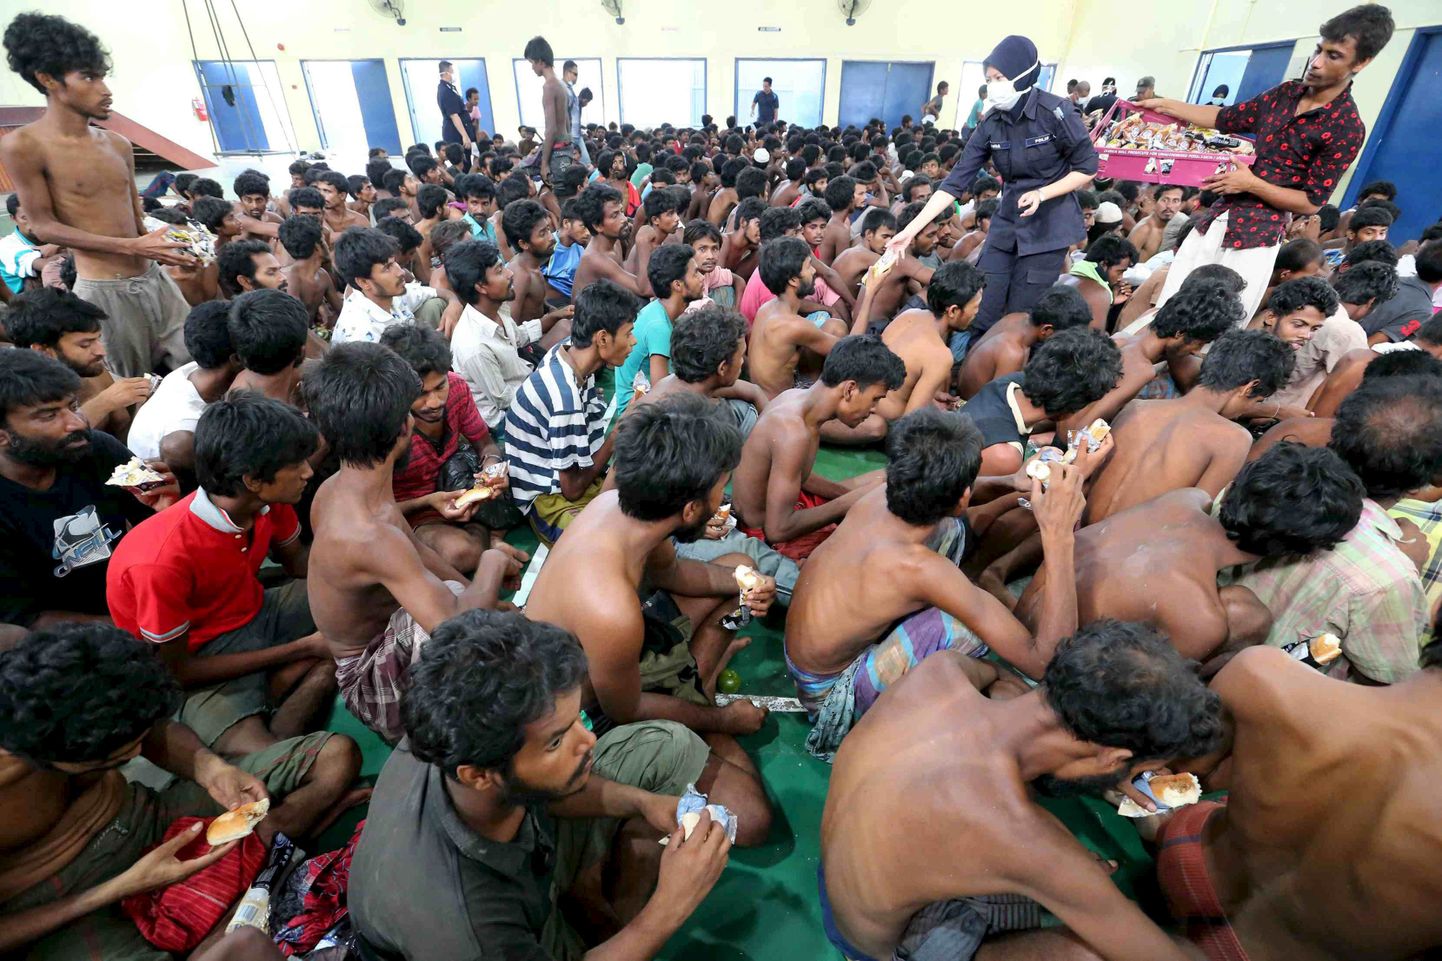 Malaisia politsei jagas nälginud ja janustele illegaalsetele immigrantidele toitu.